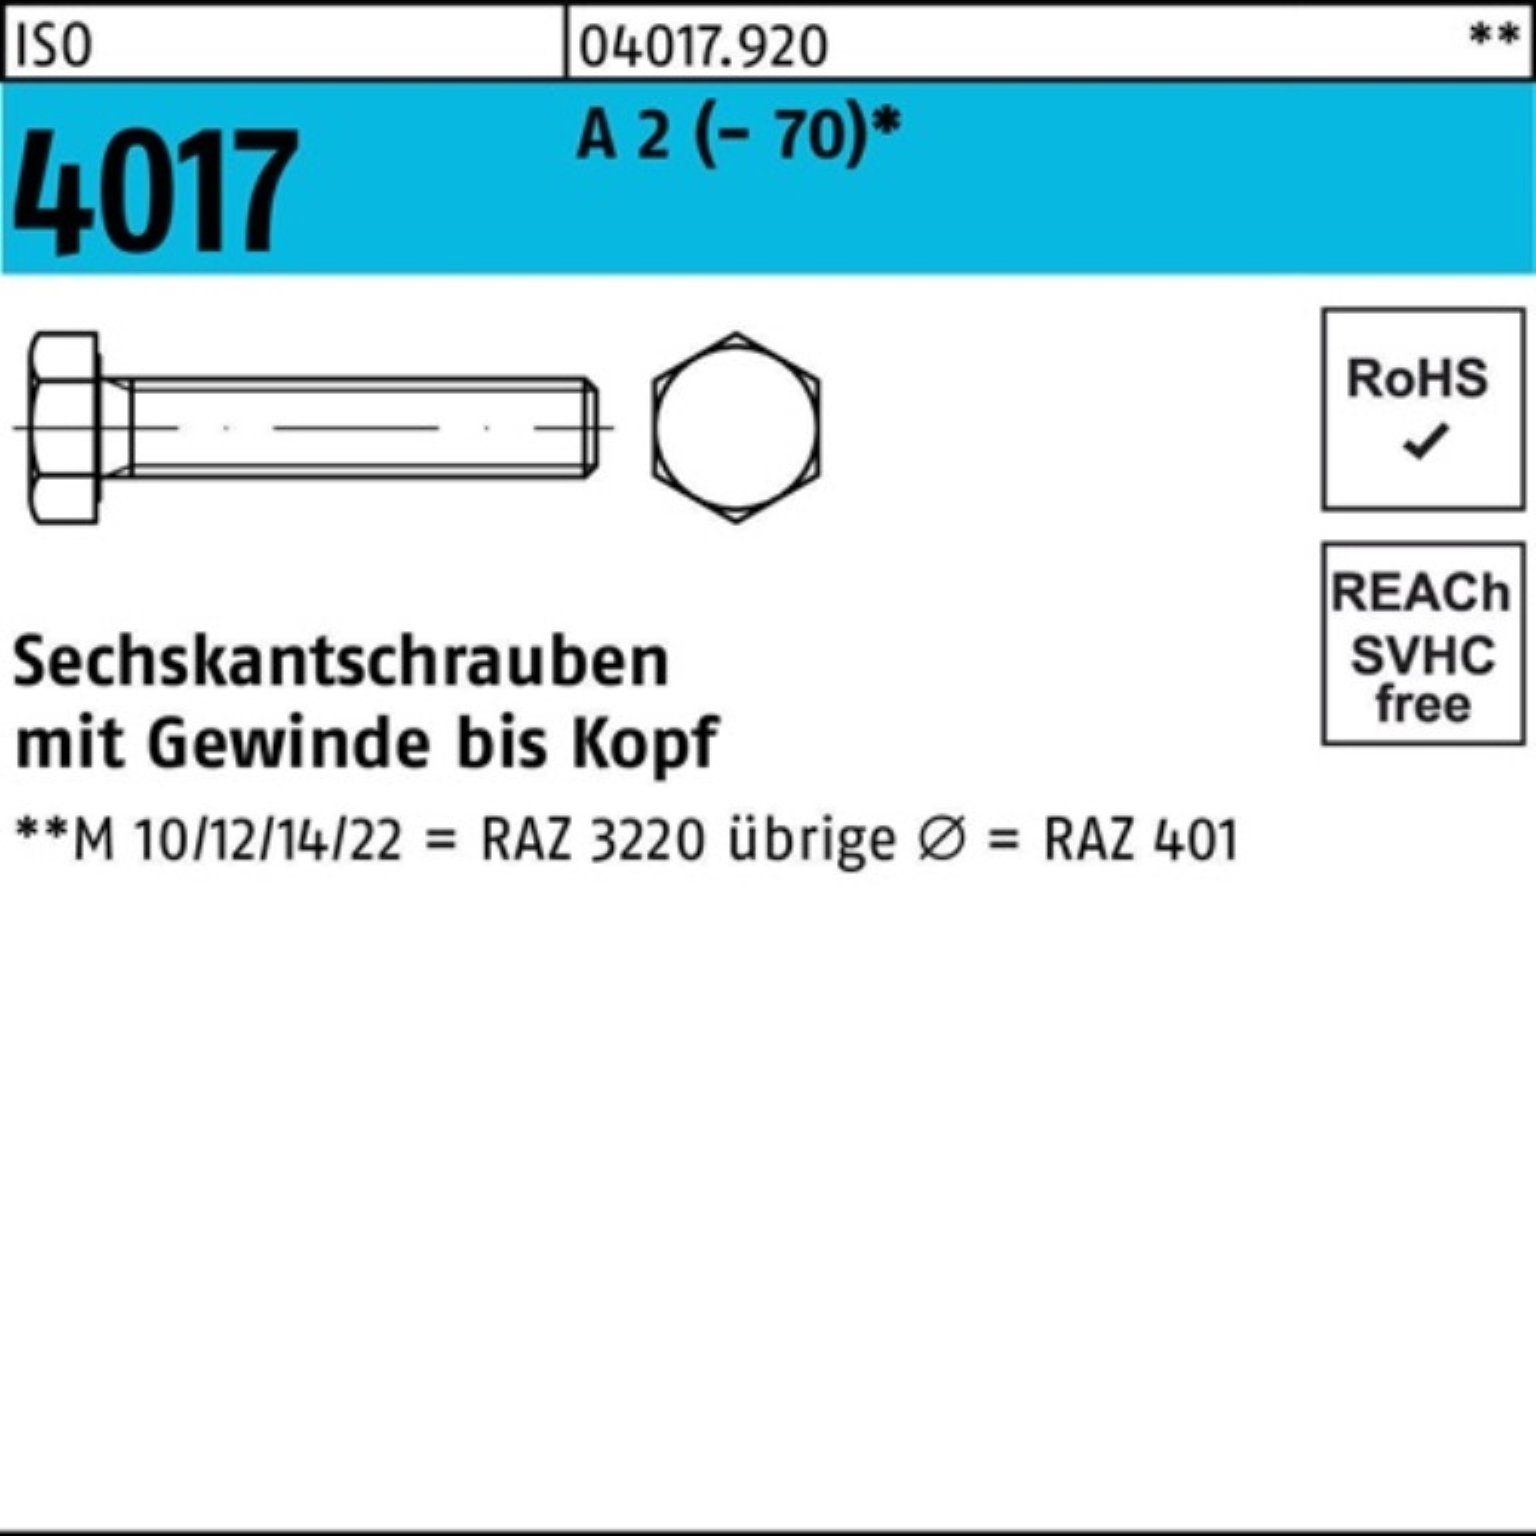 Bufab Sechskantschraube VG Sechskantschraube ISO (70) A 2 85 Pack 4017 25 100er M16x Stück